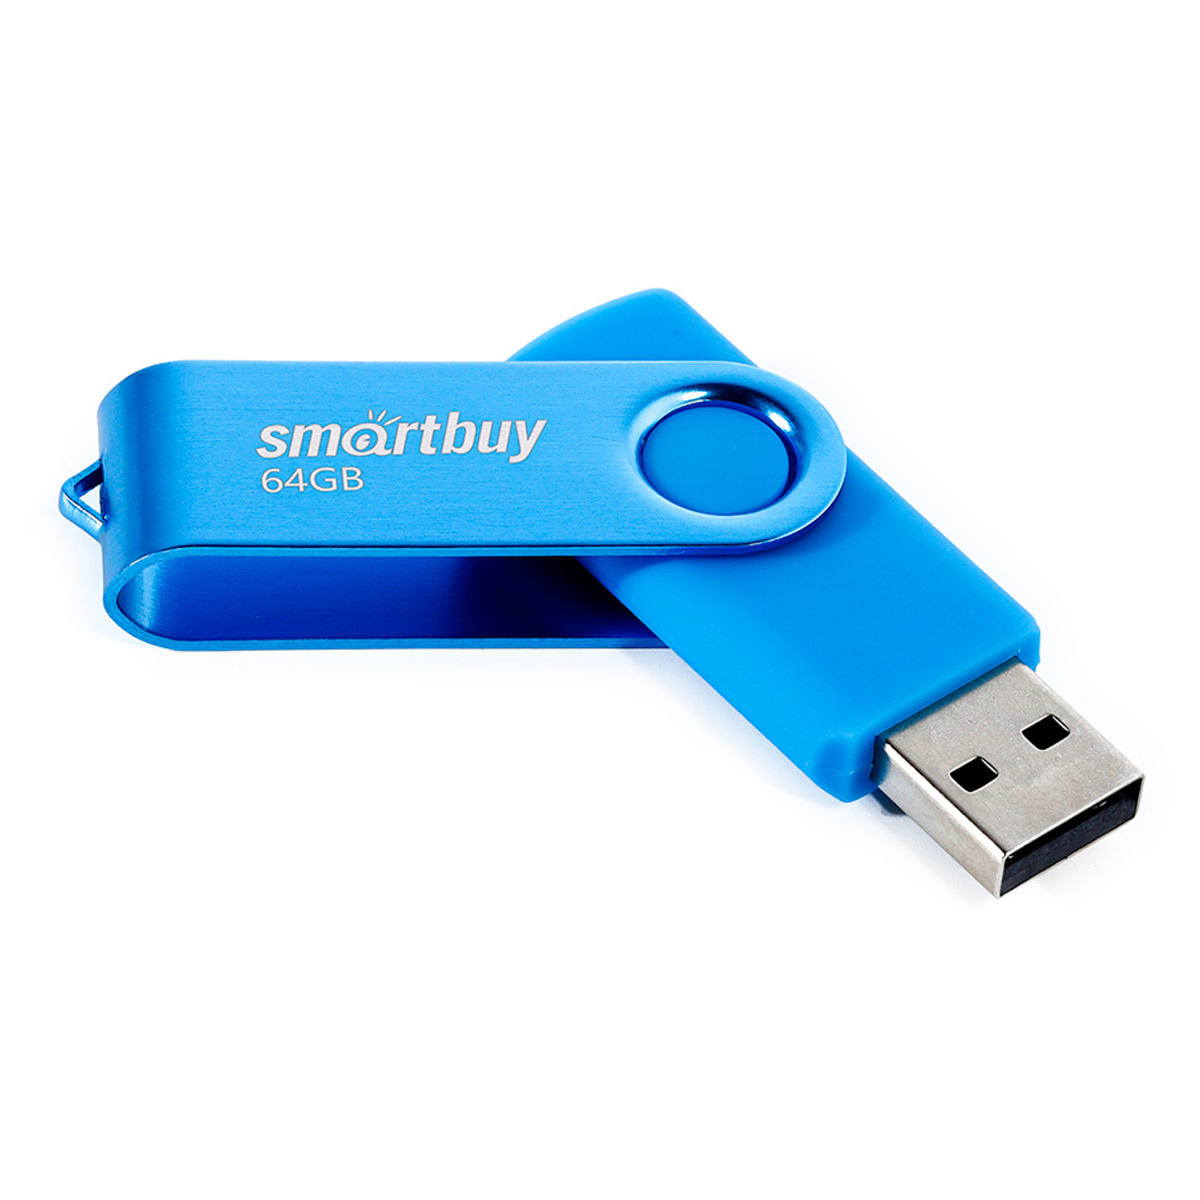  Smart Buy "Twist" 64GB, USB 2.0 Flash Drive,  